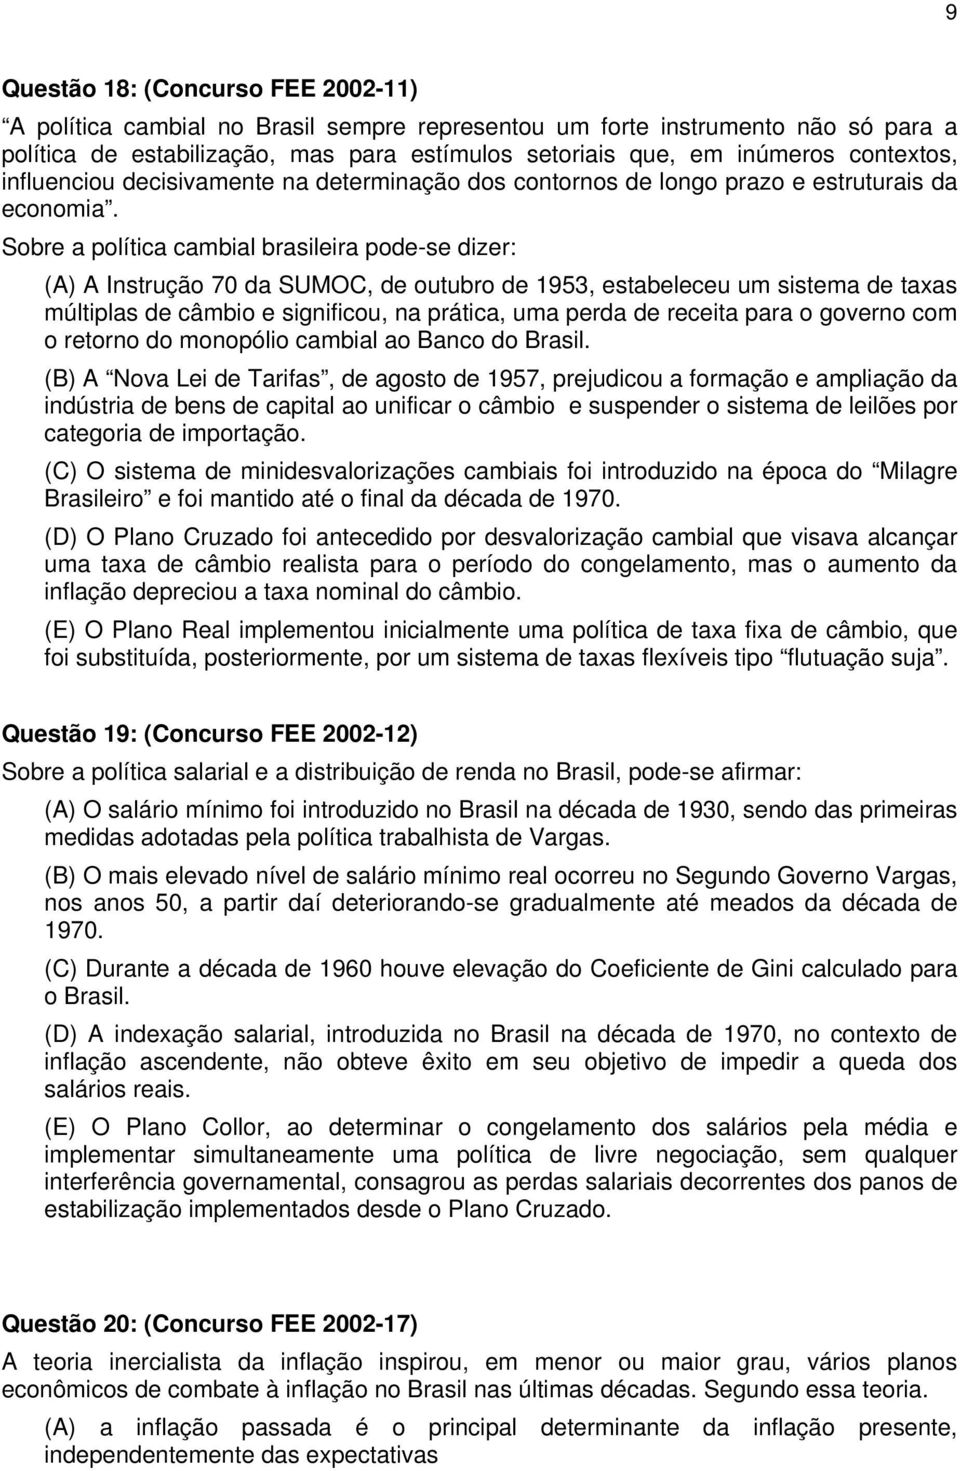 Sobre a política cambial brasileira pode-se dizer: (A) A Instrução 70 da SUMOC, de outubro de 1953, estabeleceu um sistema de taxas múltiplas de câmbio e significou, na prática, uma perda de receita